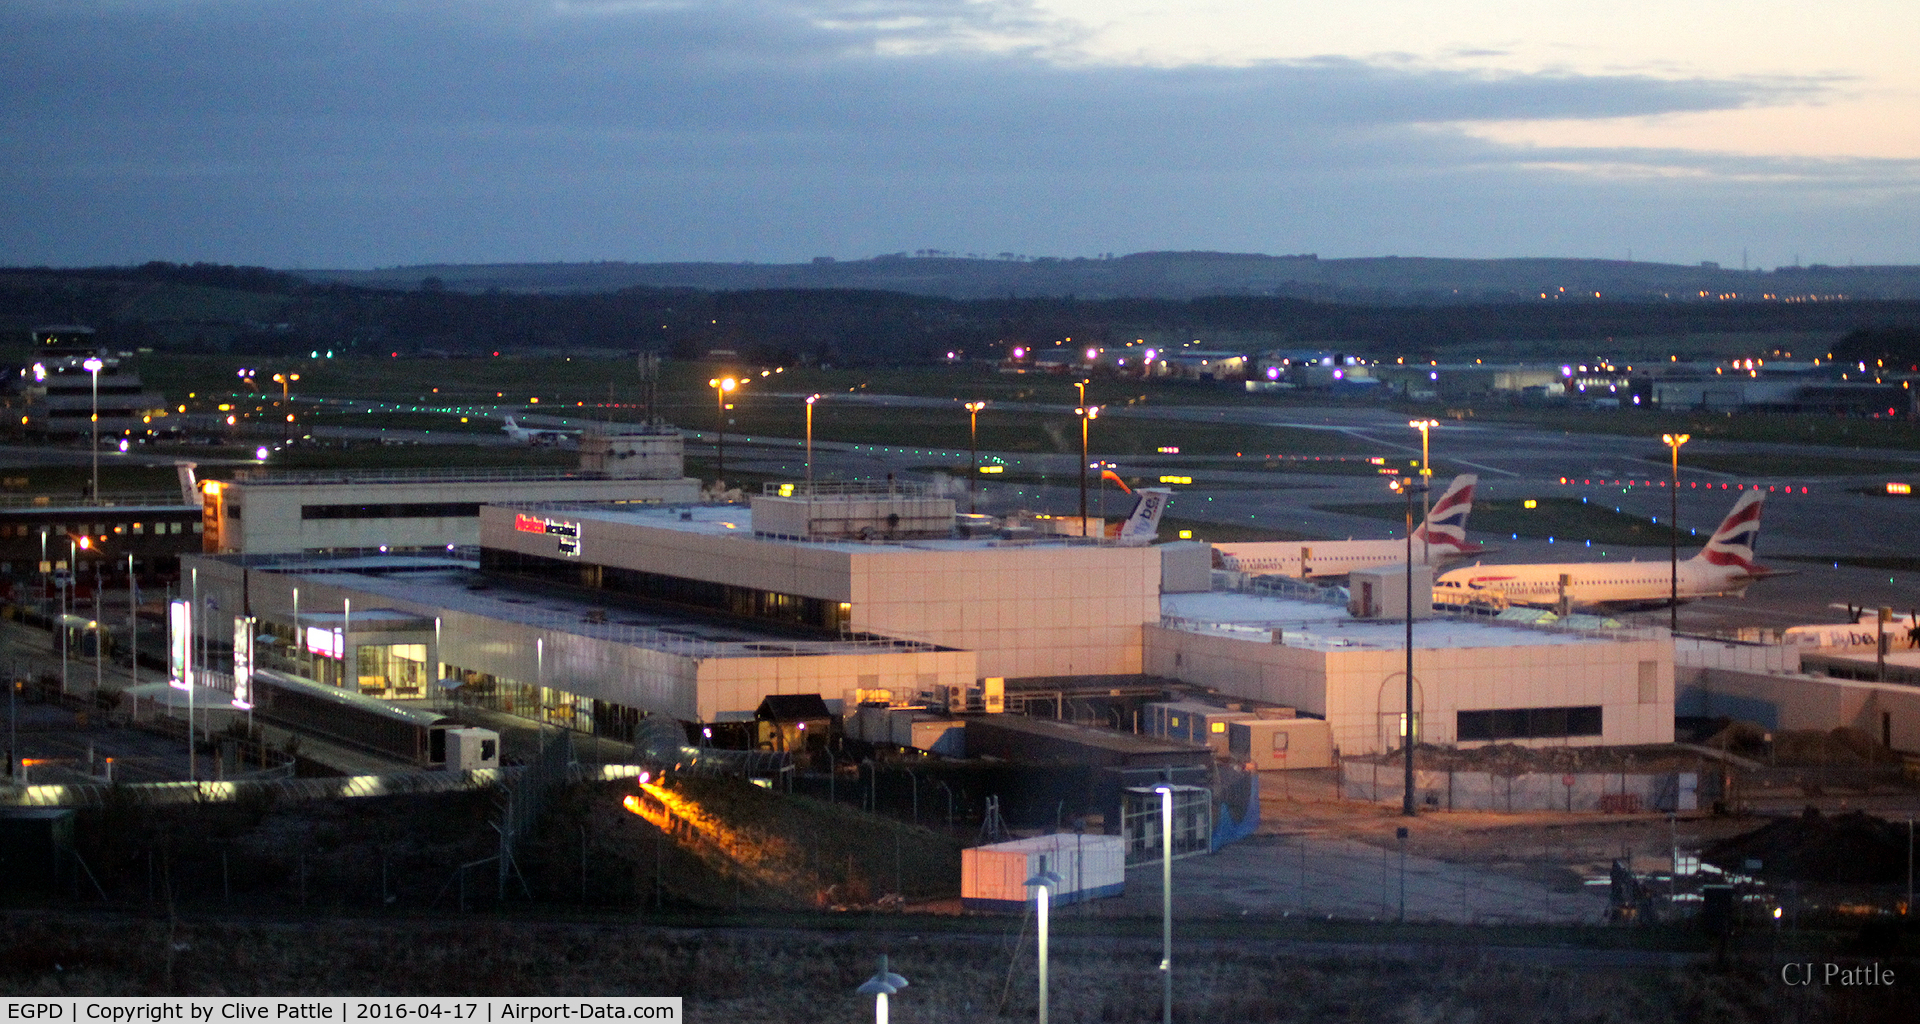 Aberdeen Airport, Aberdeen, Scotland United Kingdom (EGPD) - Dusk terminal view at Aberdeen EGPD